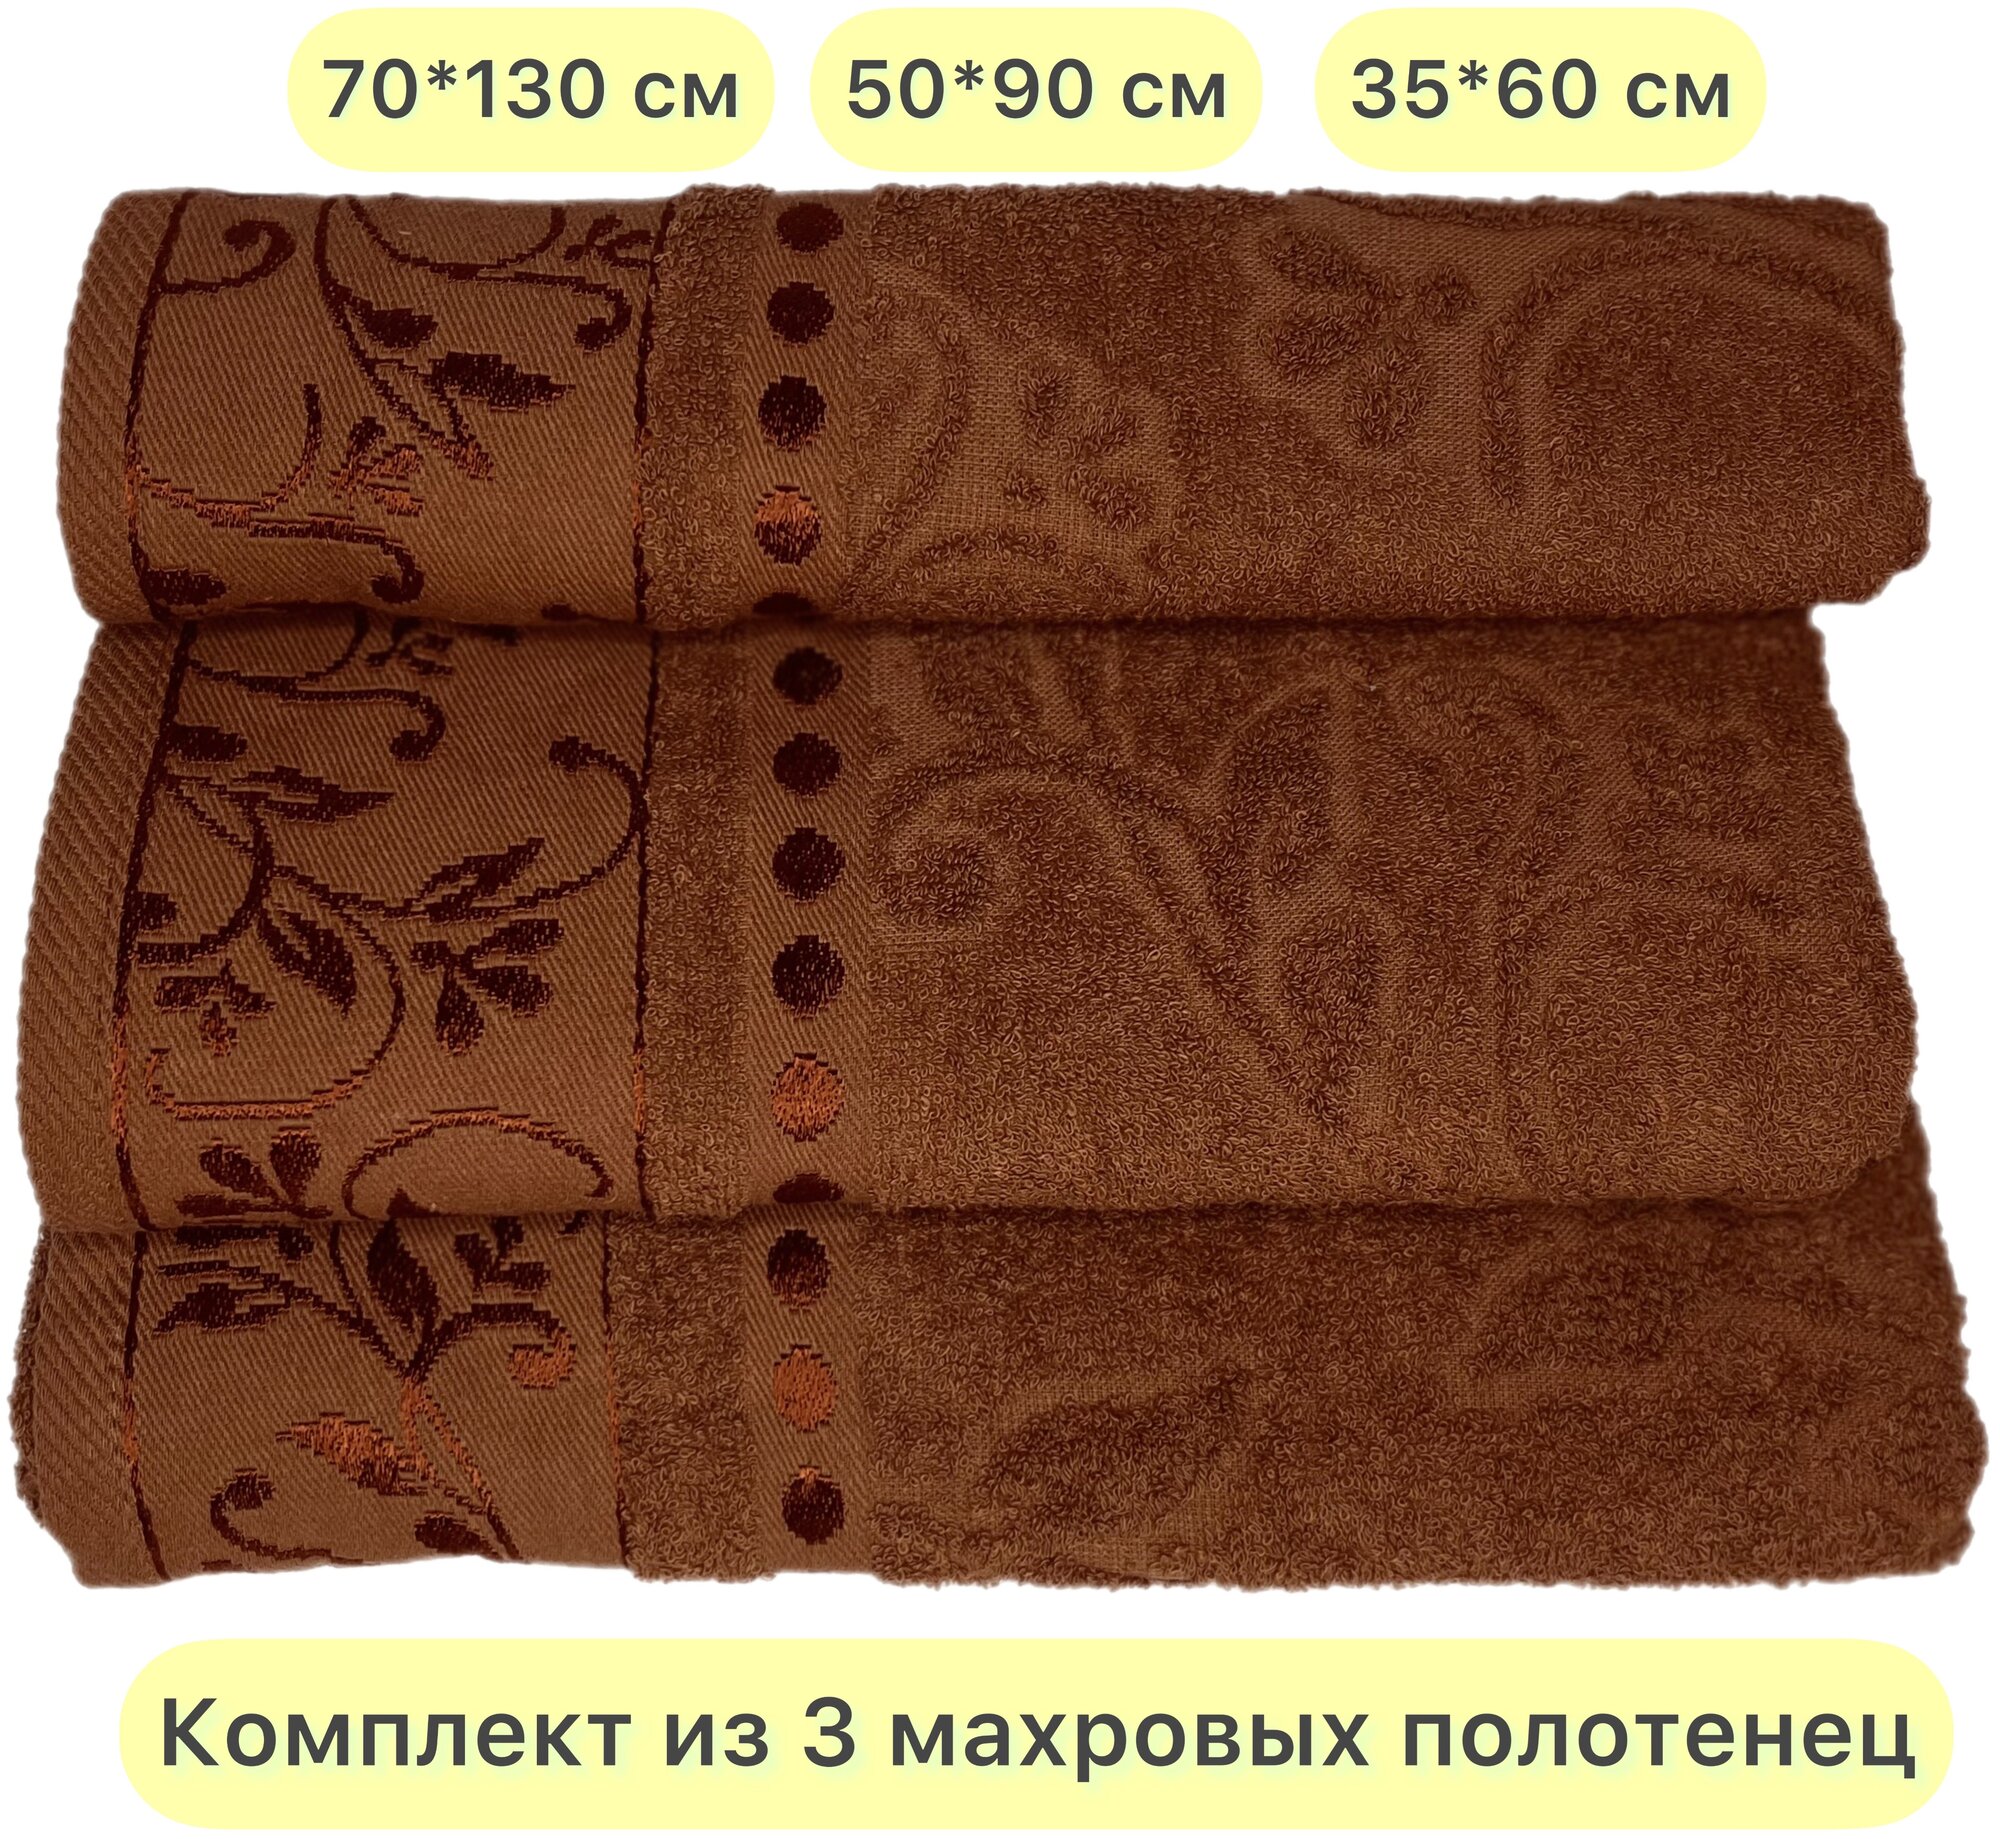 Набор махровых полотенец 3 шт. Вышневолоцкий текстиль, коричневый